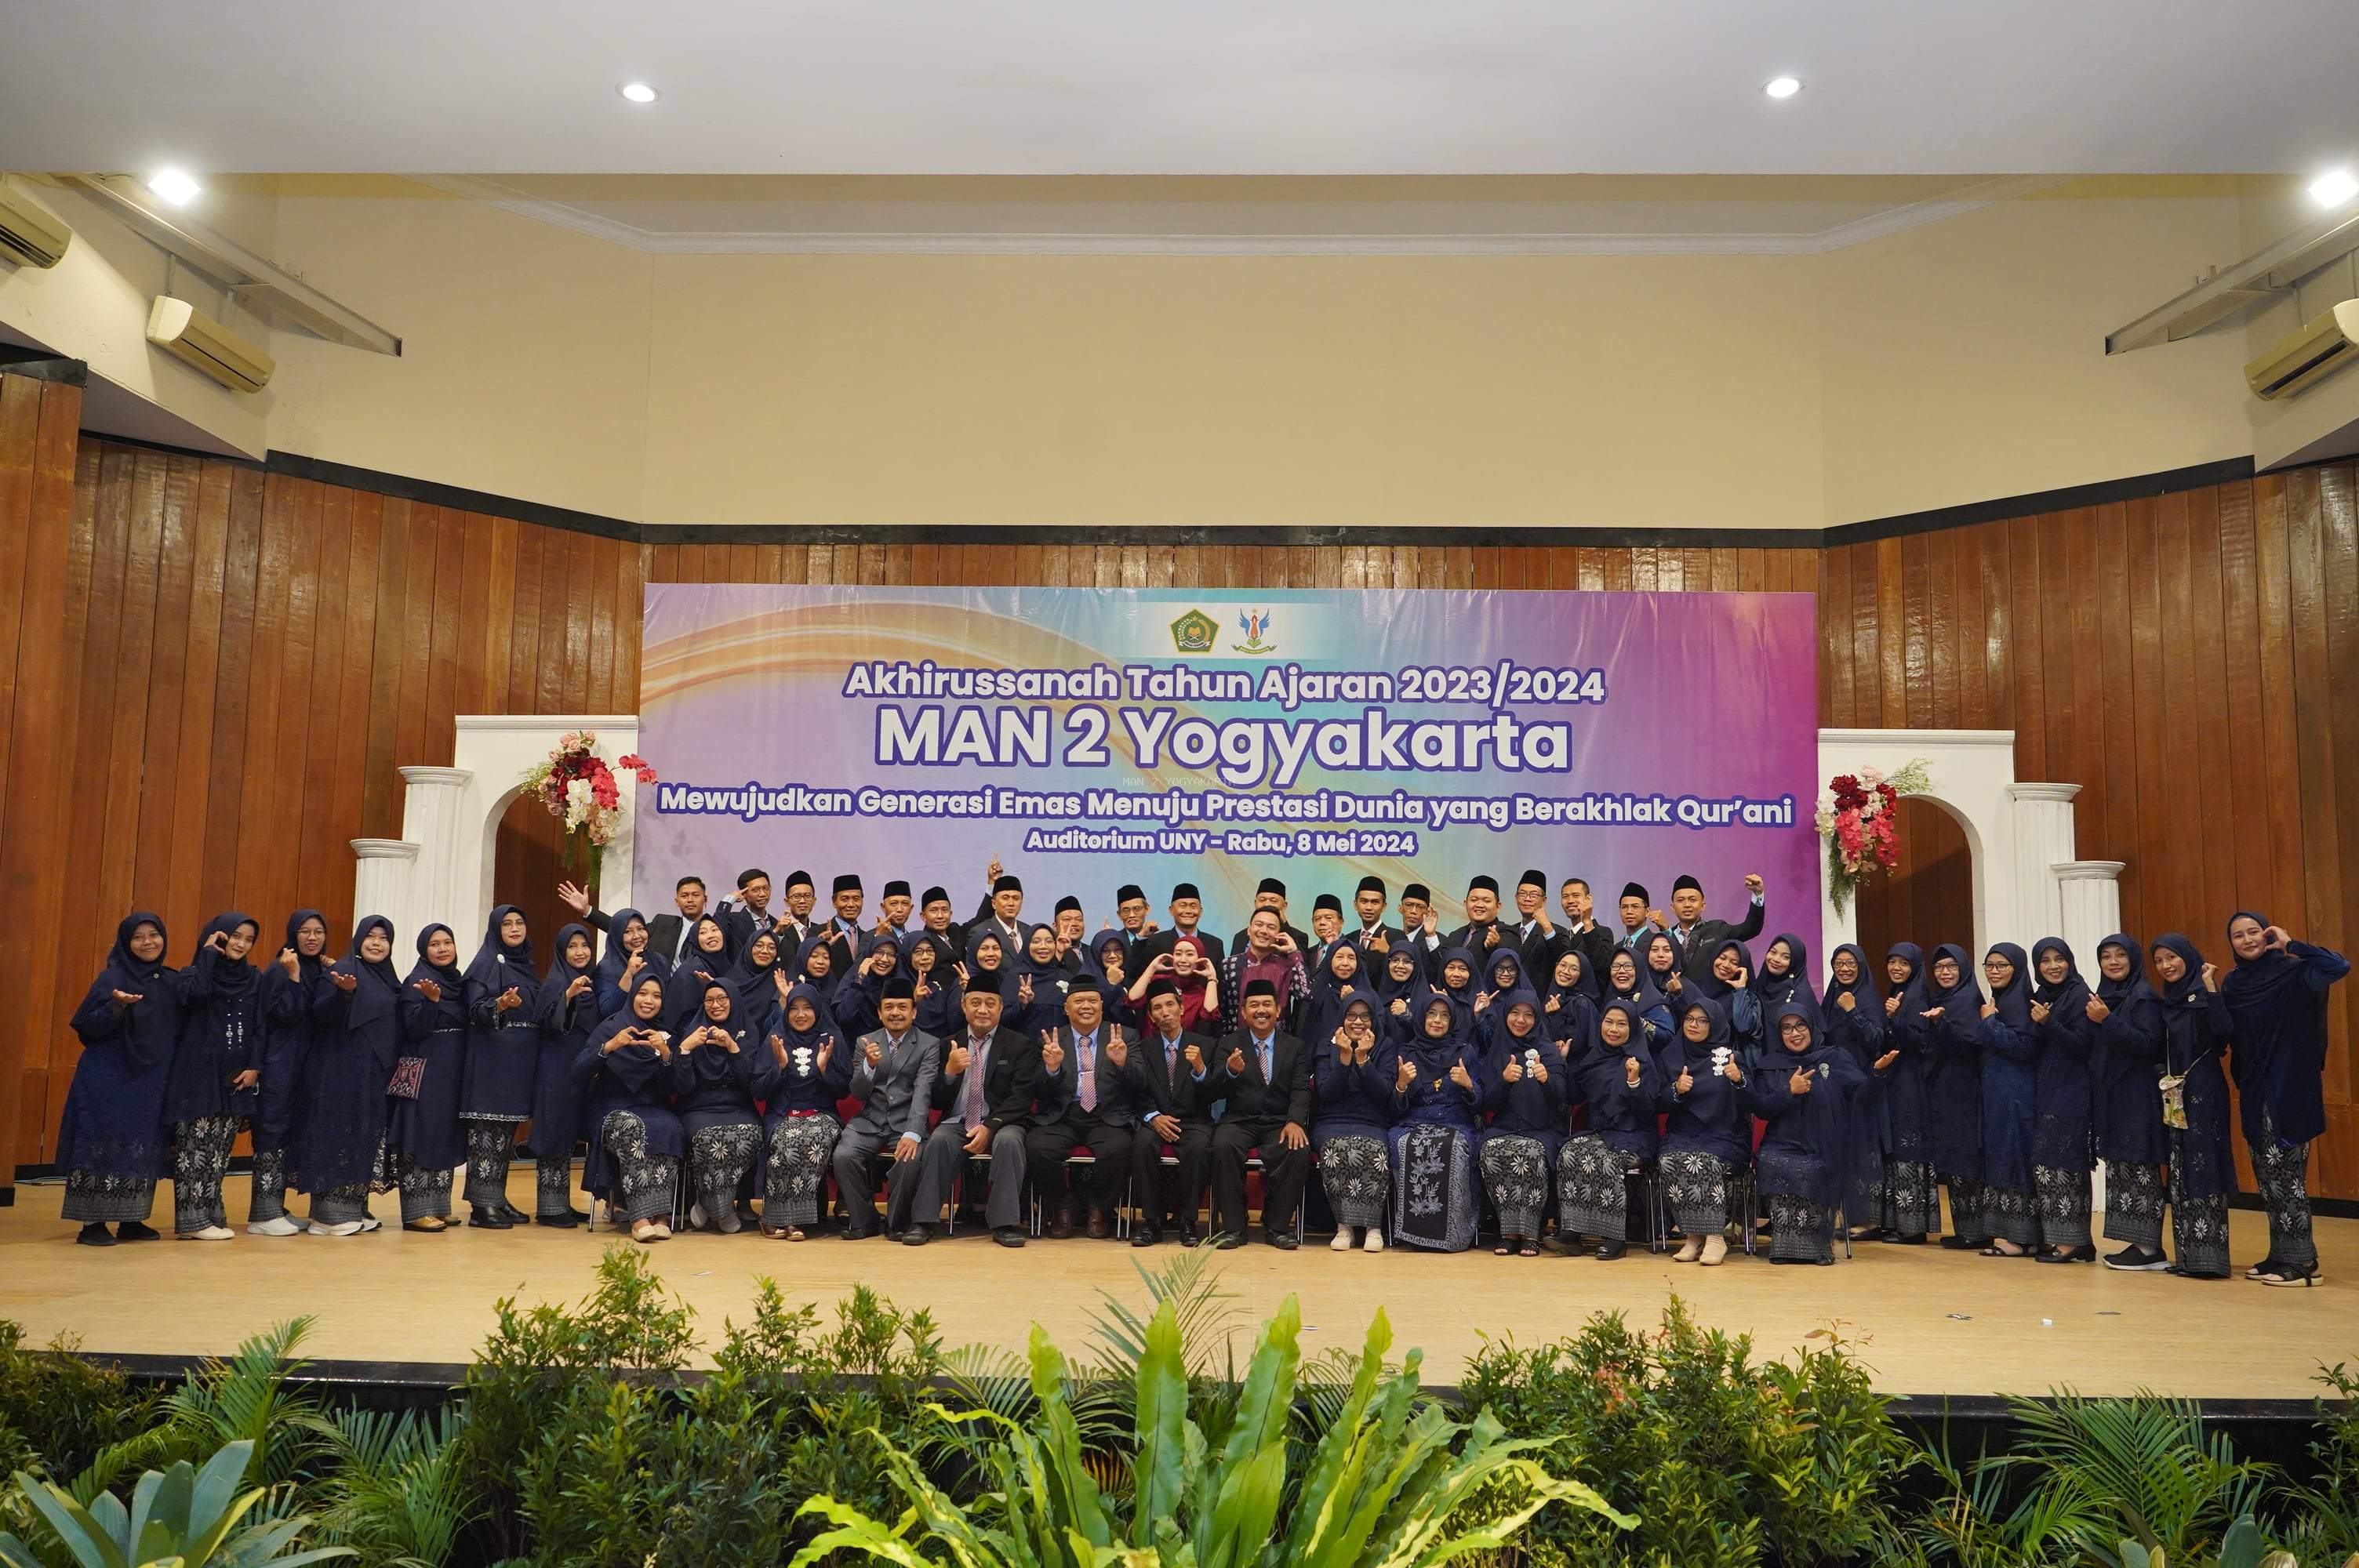 Perayaan Akhirussanah MAN 2 Yogyakarta “Mewujudkan Generasi Emas Menuju Prestasi Dunia Yang Berakhlak Qurani”